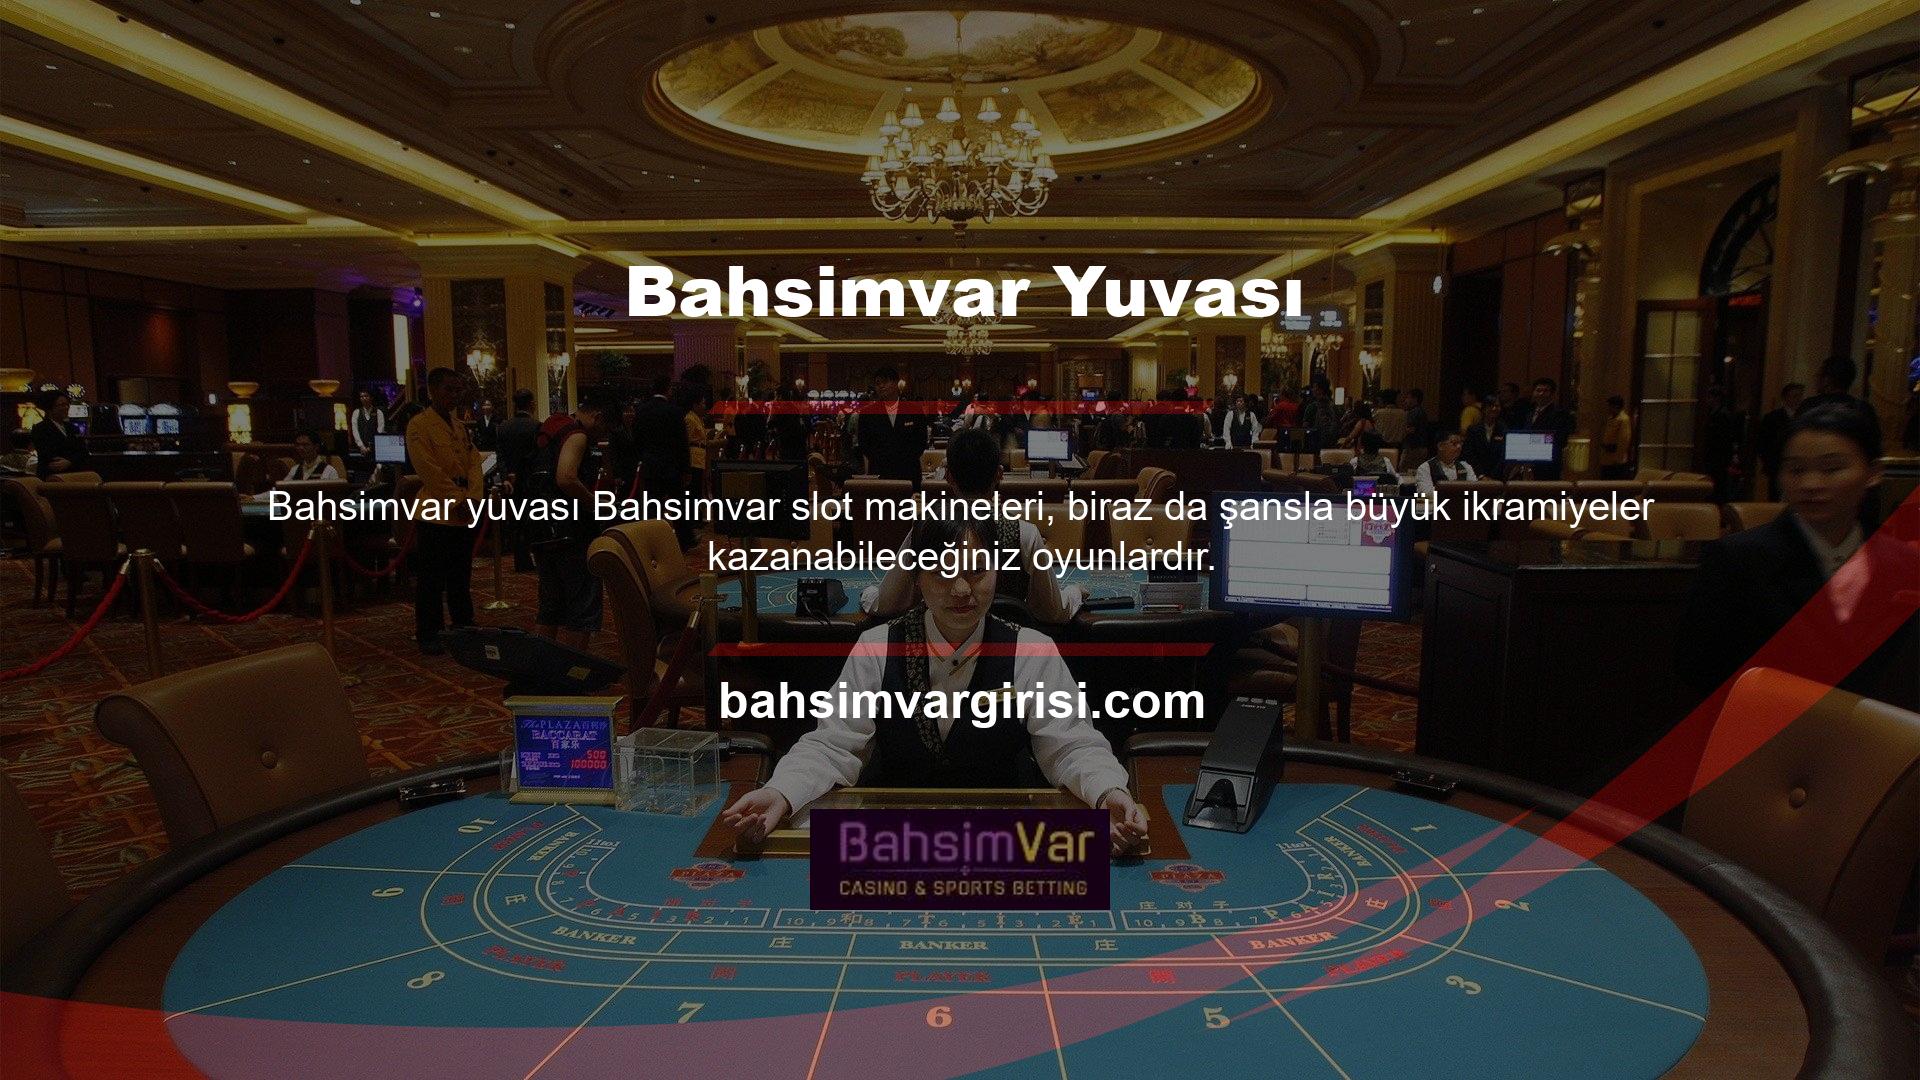 Casino sitesi, casino kültürünün en önemli sembollerinden biri olan Bahsimvar slotunu oynamanıza olanak sağlıyor